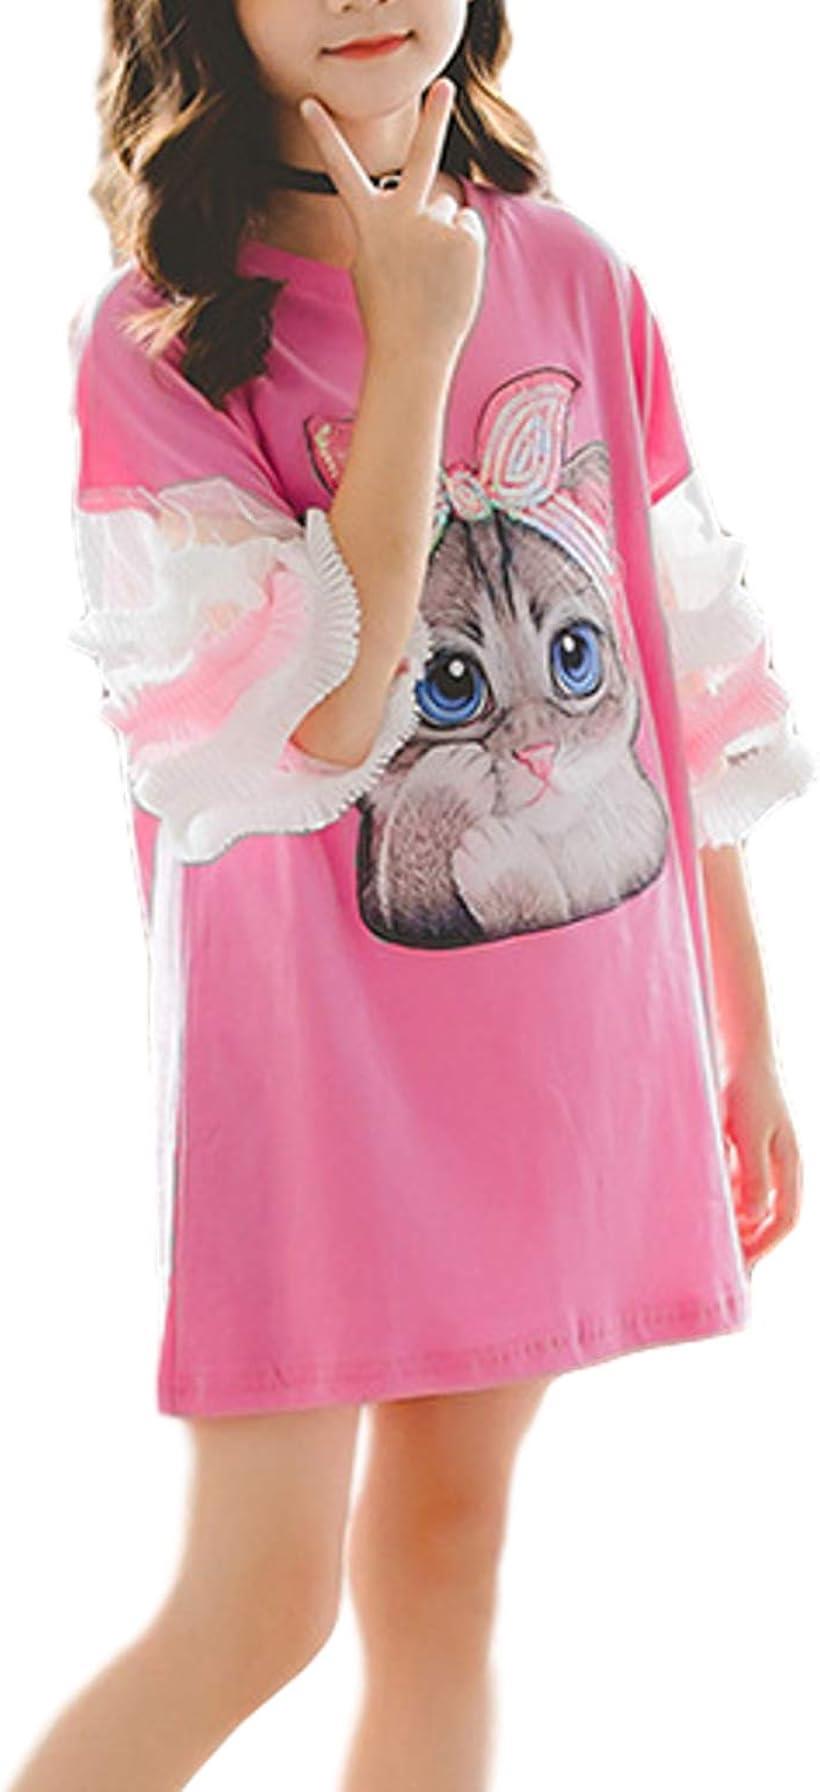 フリフラ 110cm 桃 キッズ ワンピース フリル袖 ネコ柄 ロゴプリント付き デニム 女の子 ドレス( ピンク, 110)